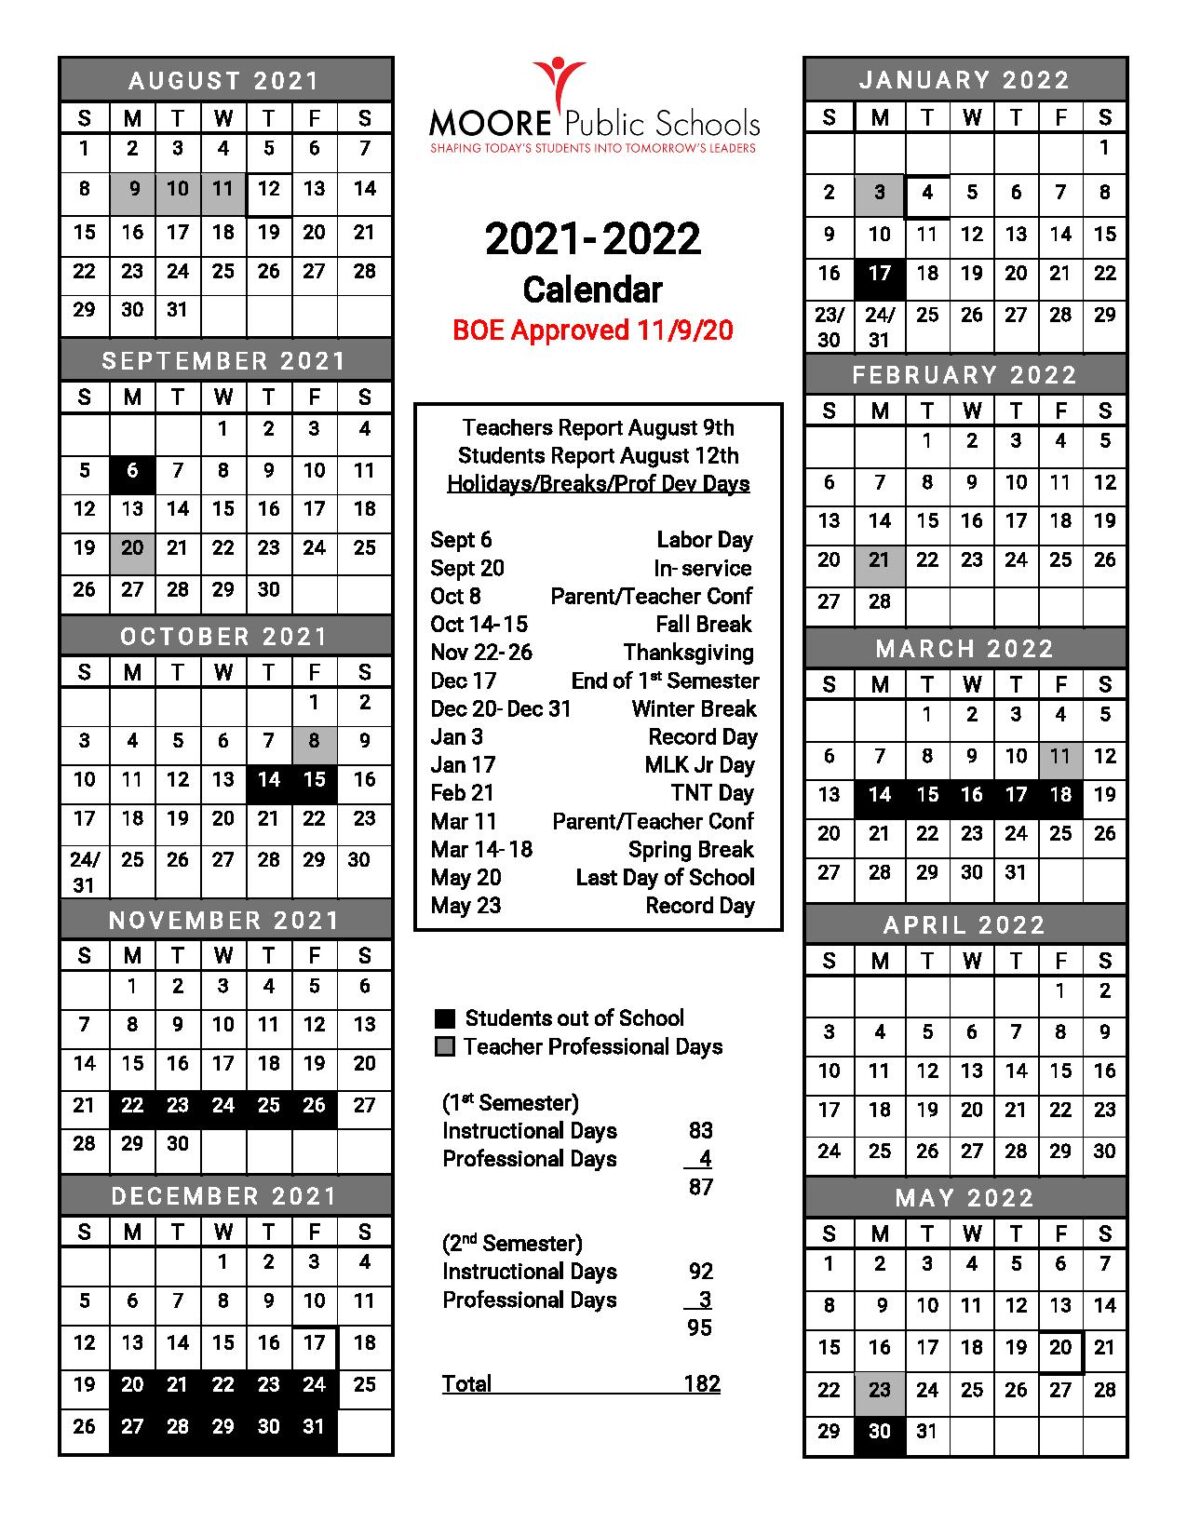 Moore Public Schools Calendar 20212022 in PDF